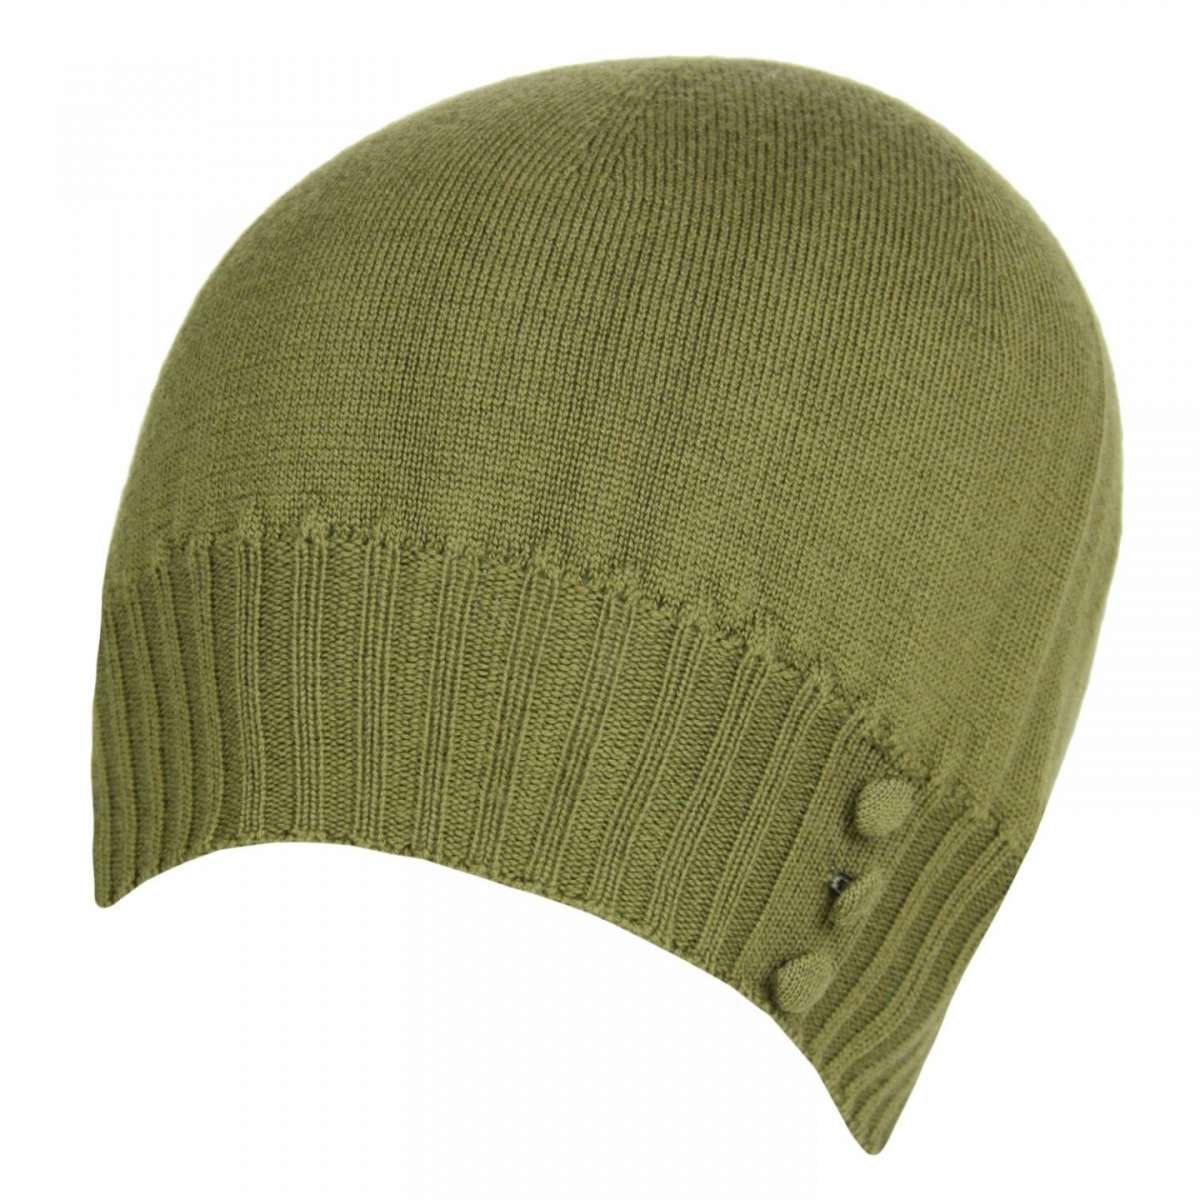 Cappellino verde